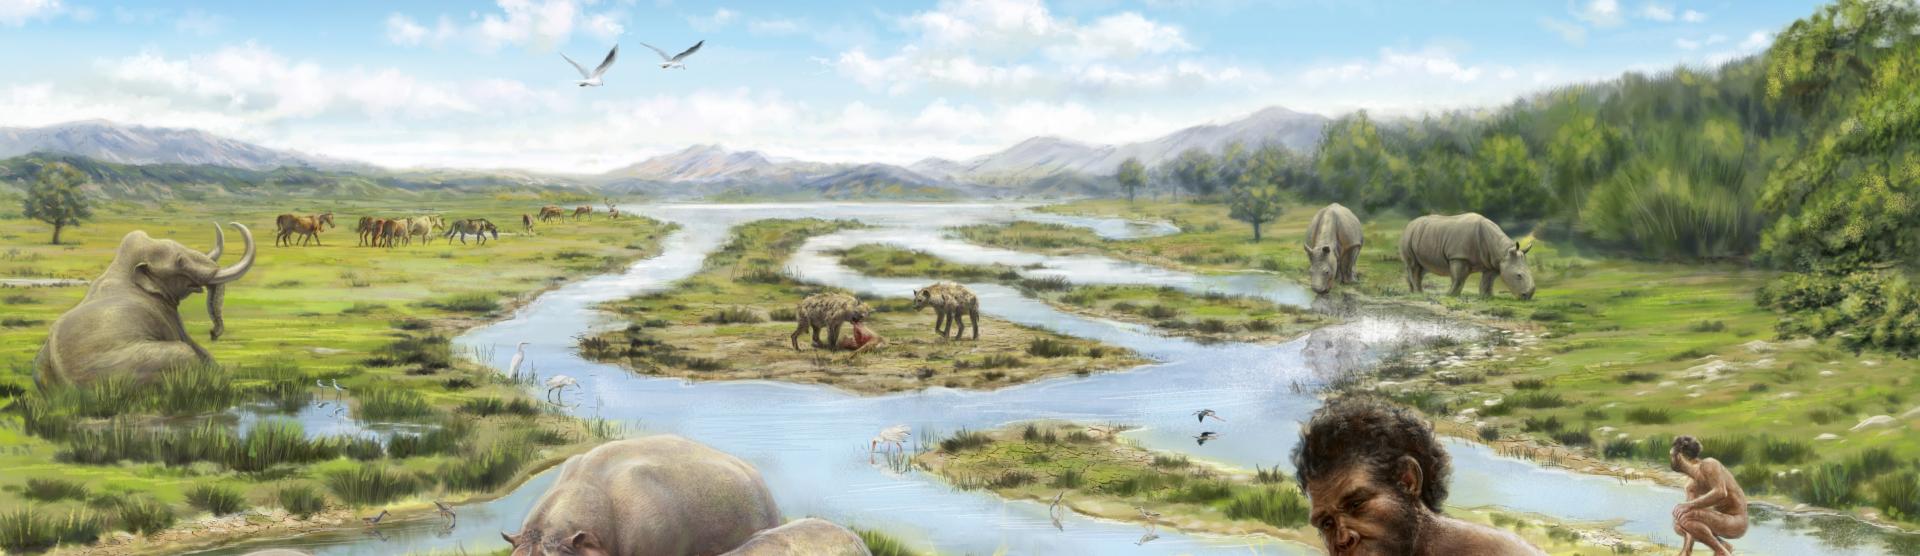 Reconstrucción paleoecológica del entorno de los yacimientos del Barranc de la Boella hace cerca de 1 millón de años